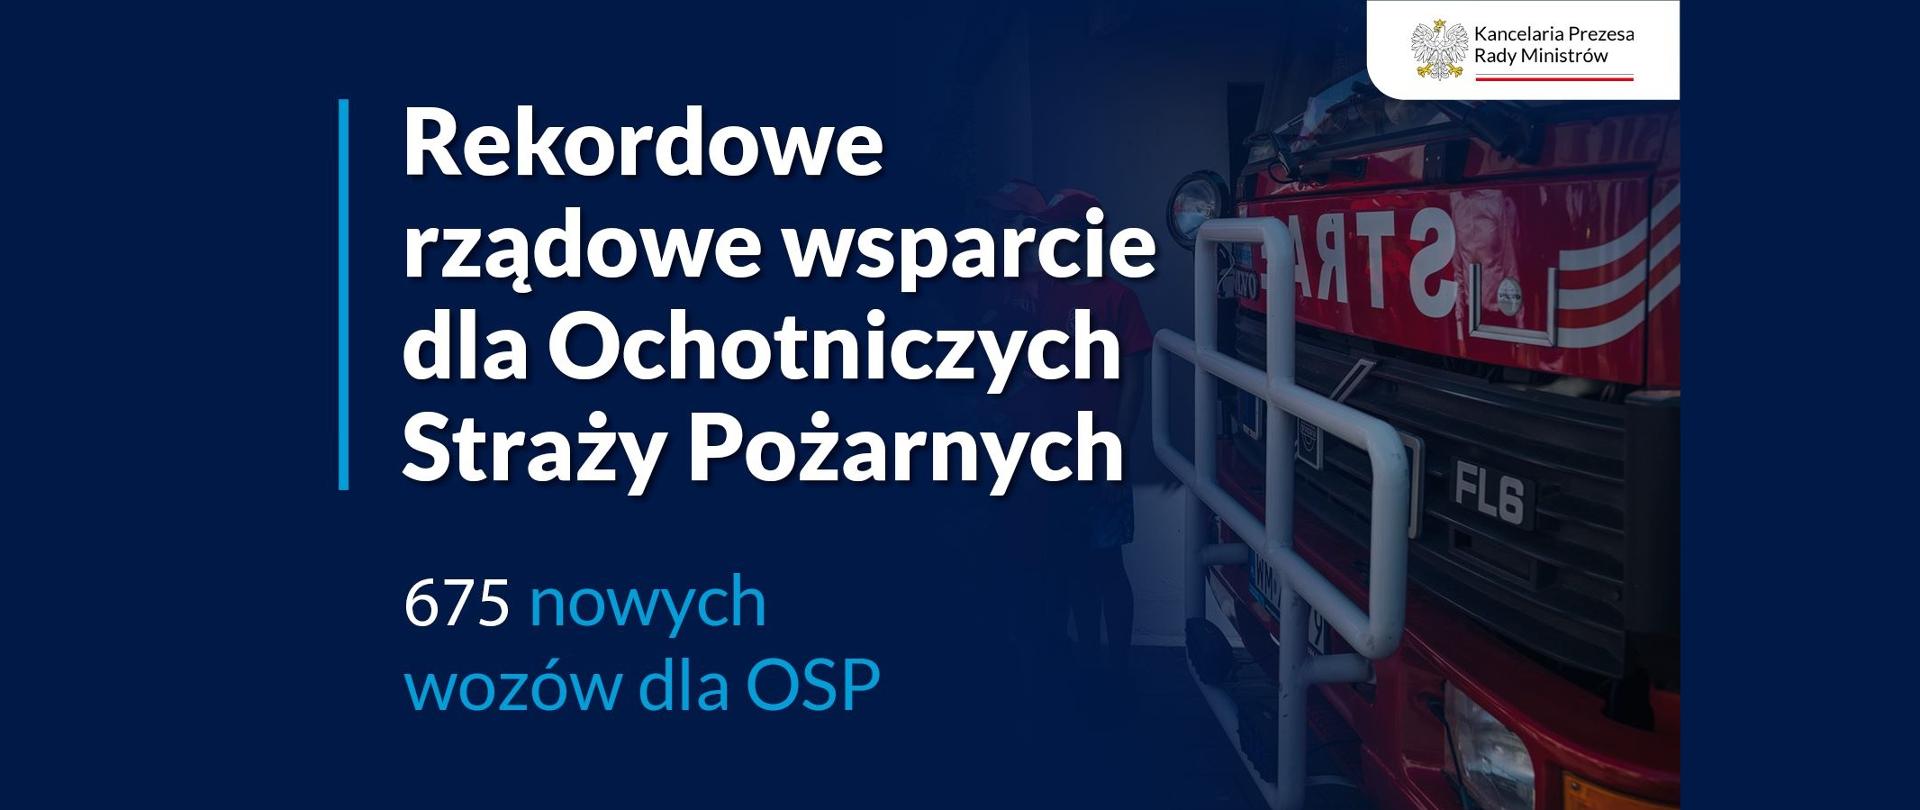 Grafika przedstawia auto pożarnicze wraz z napisem: rekordowe rządowe wsparcie dla OSP